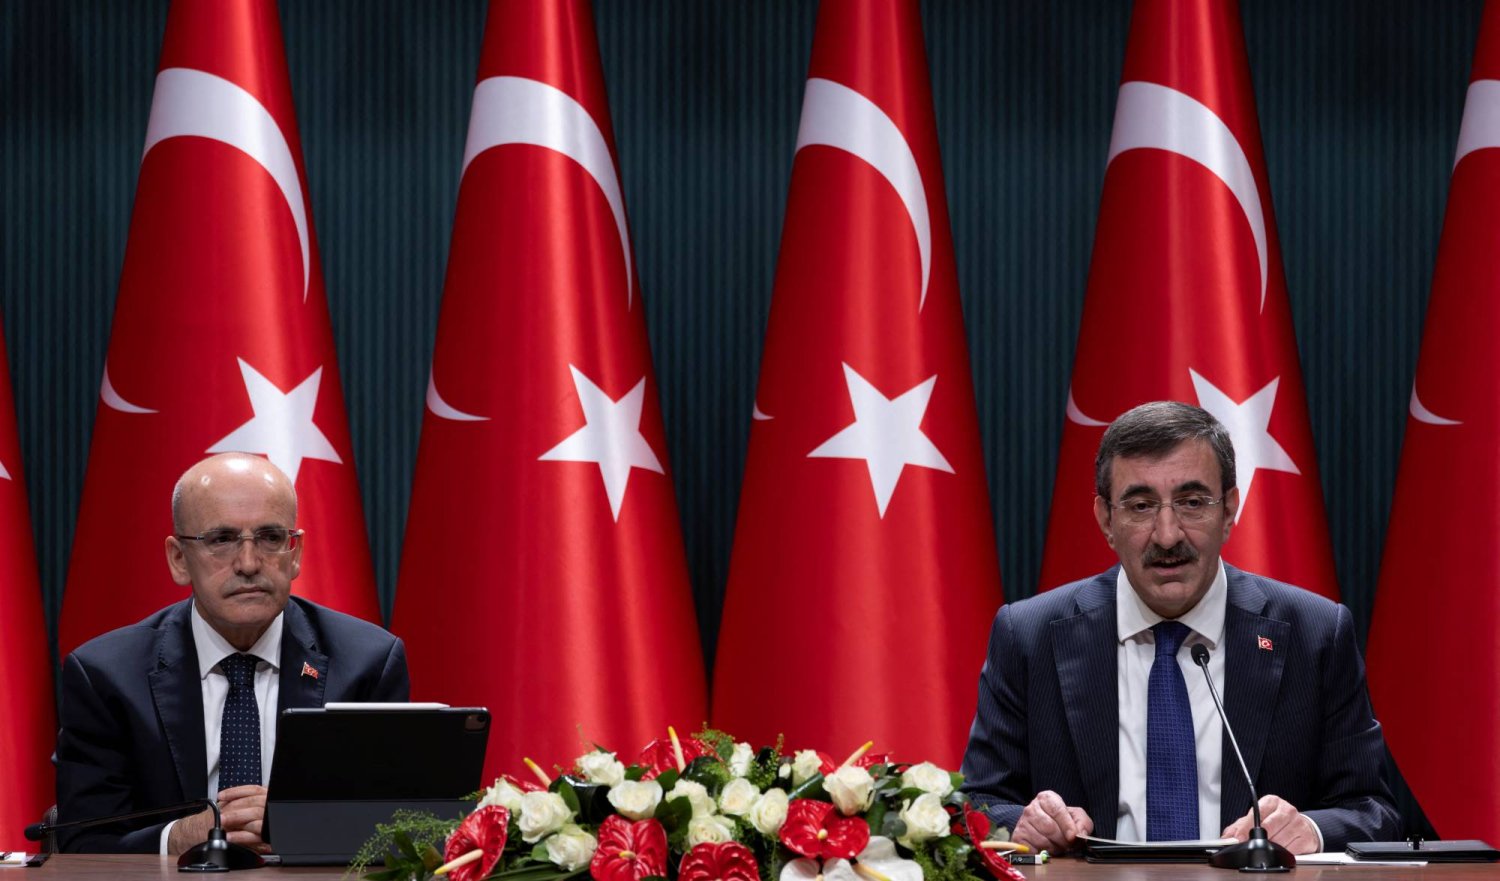 نائب الرئيس التركي جودت يلماظ ووزير الخزانة والمالية محمد شيمشك خلال مؤتمر صحافي في أنقرة الاثنين (رويترز)